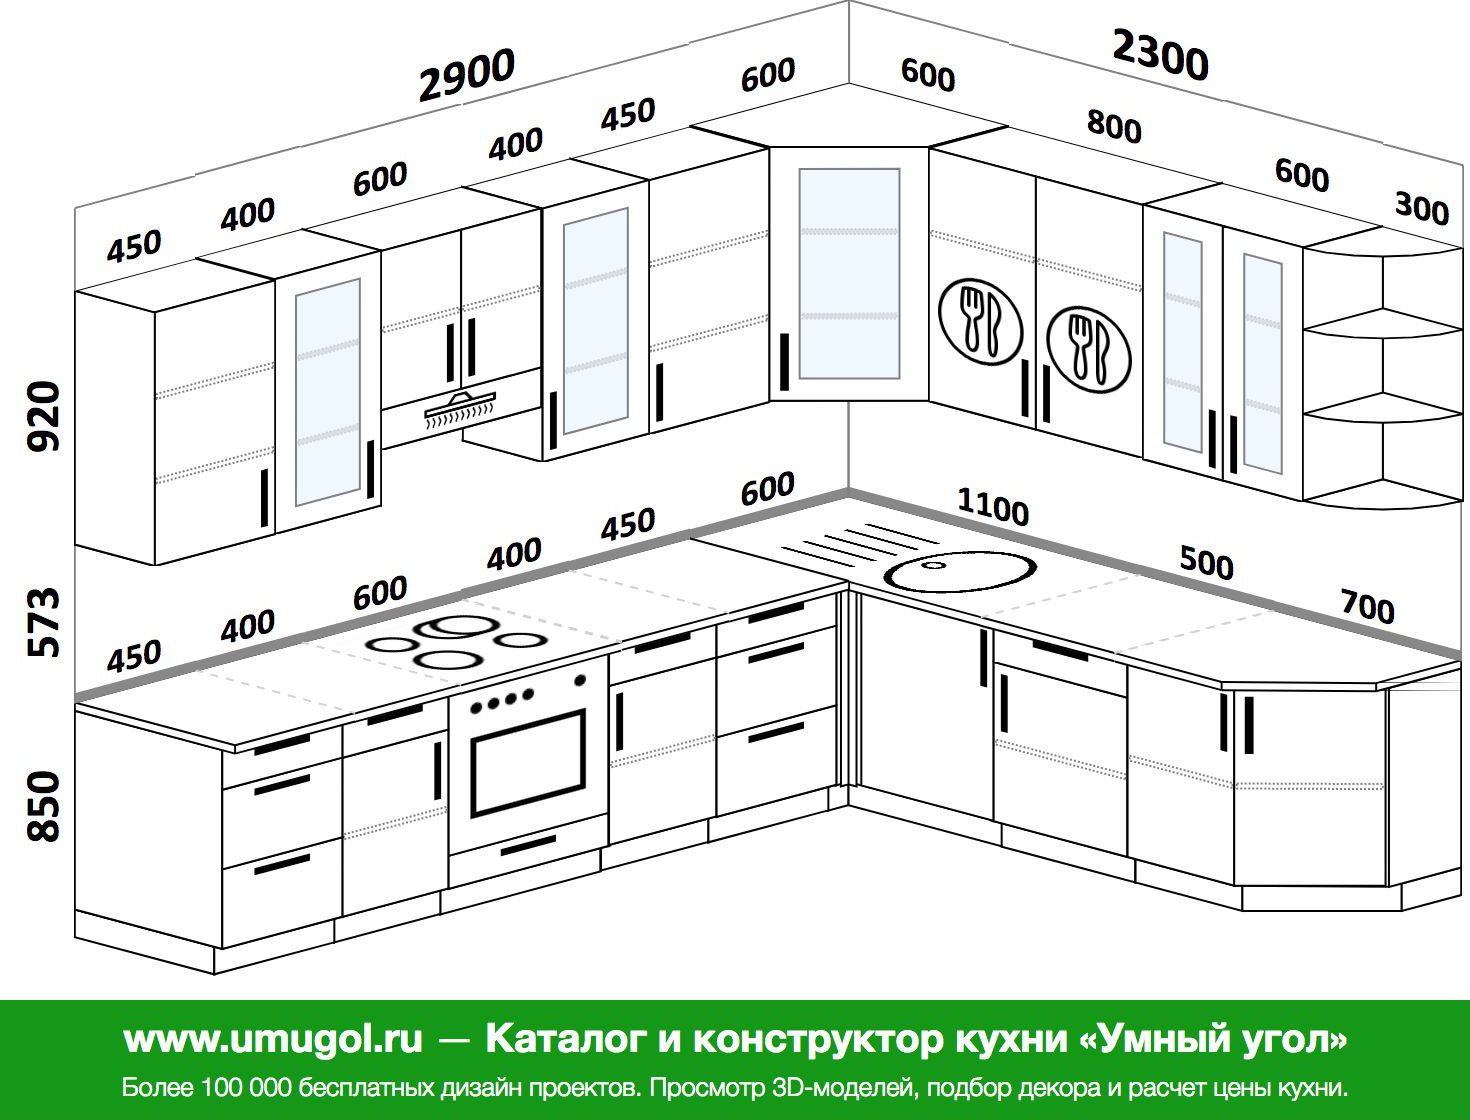 Высота кухонной столешницы стандарт для кухни